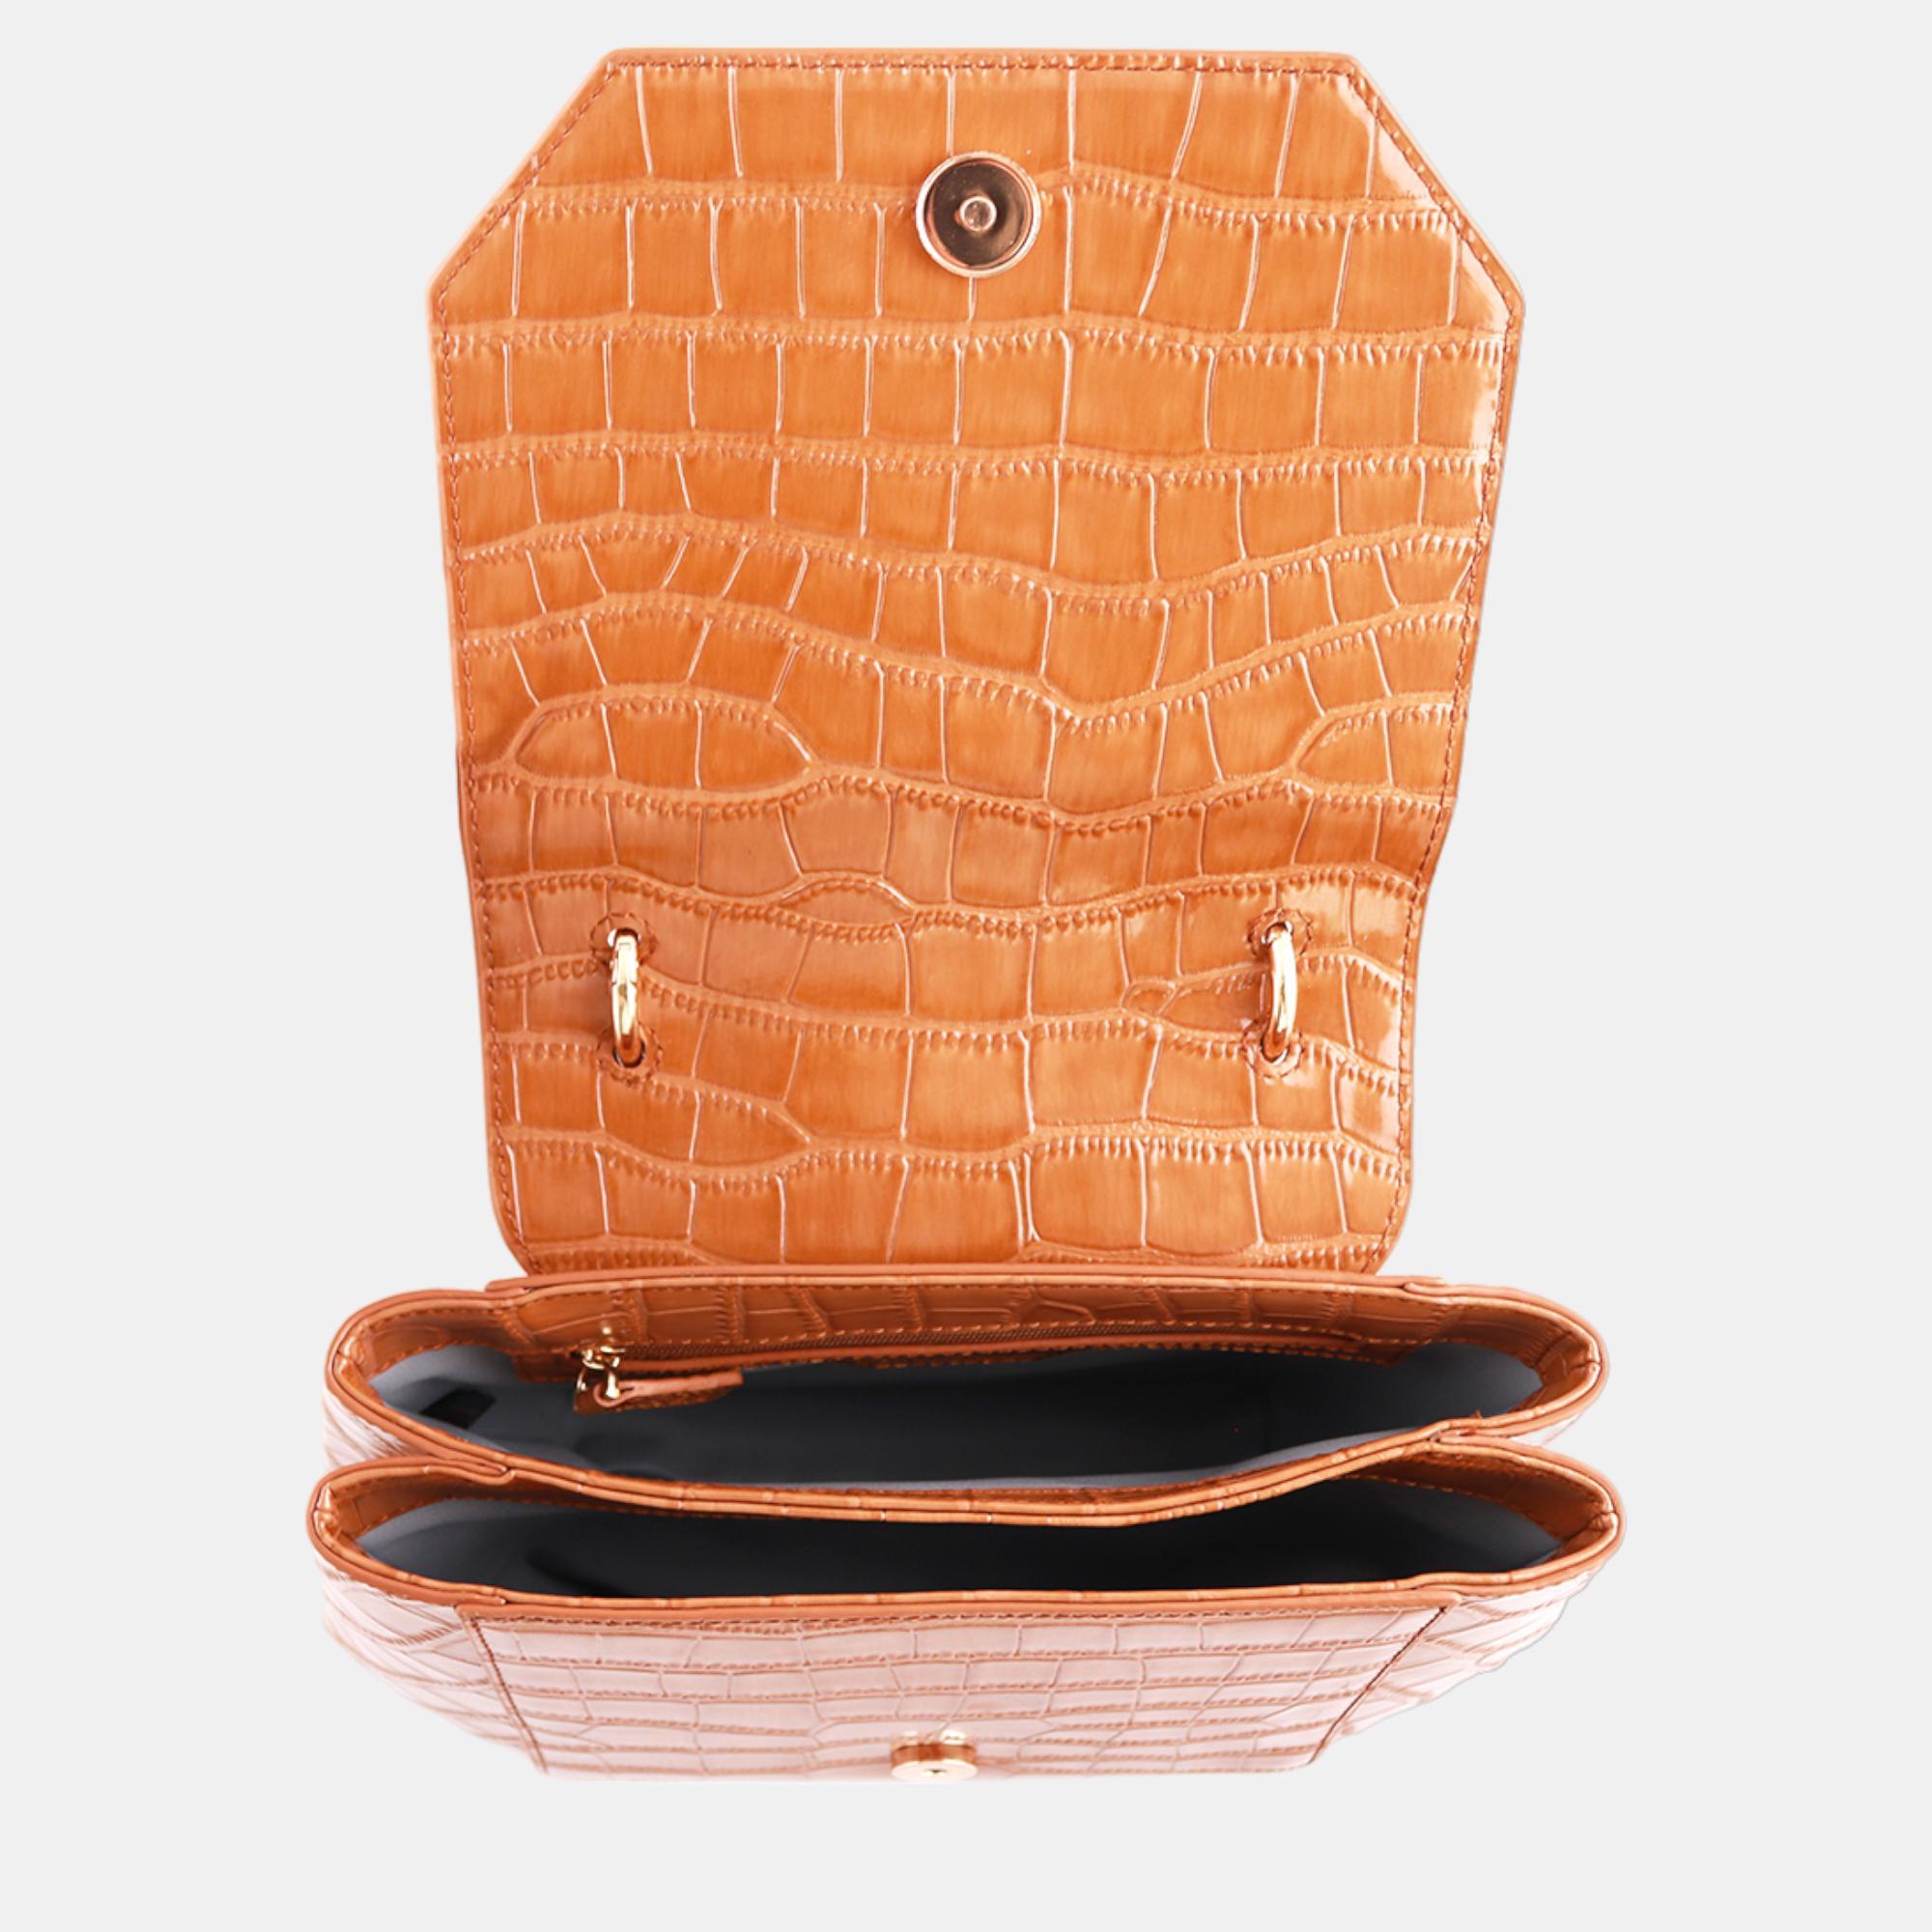 Charriol Brown Leather Passion Handbag